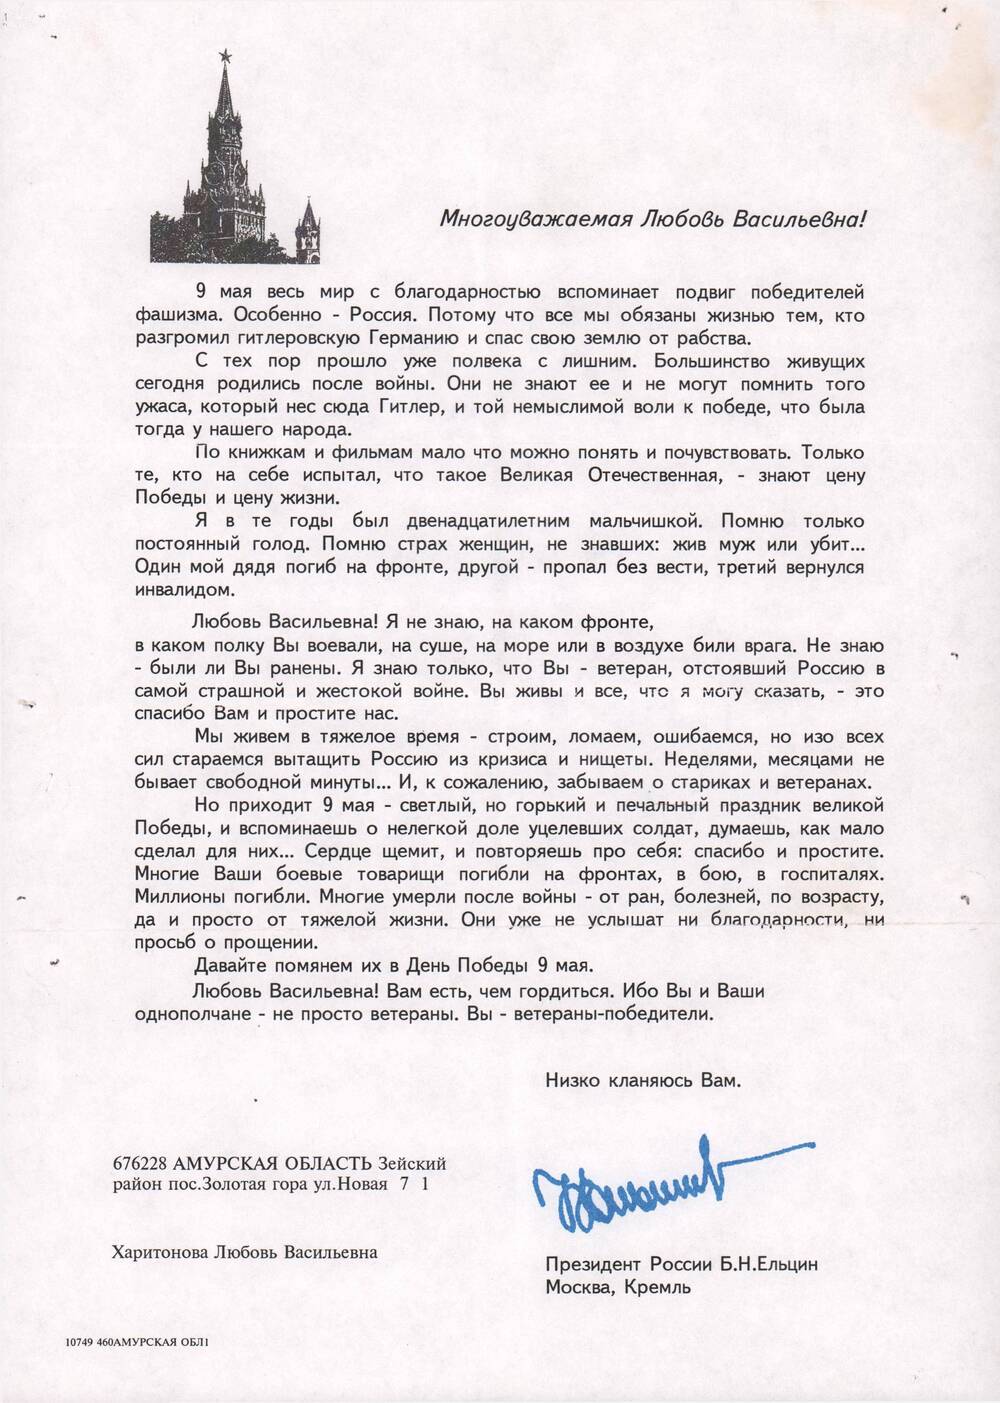 Благодарственное письмо Харитоновой  Л.В.  в честь Дня Победы от Президента  России Б.Н. Ельцина, 9 мая 1996 года.